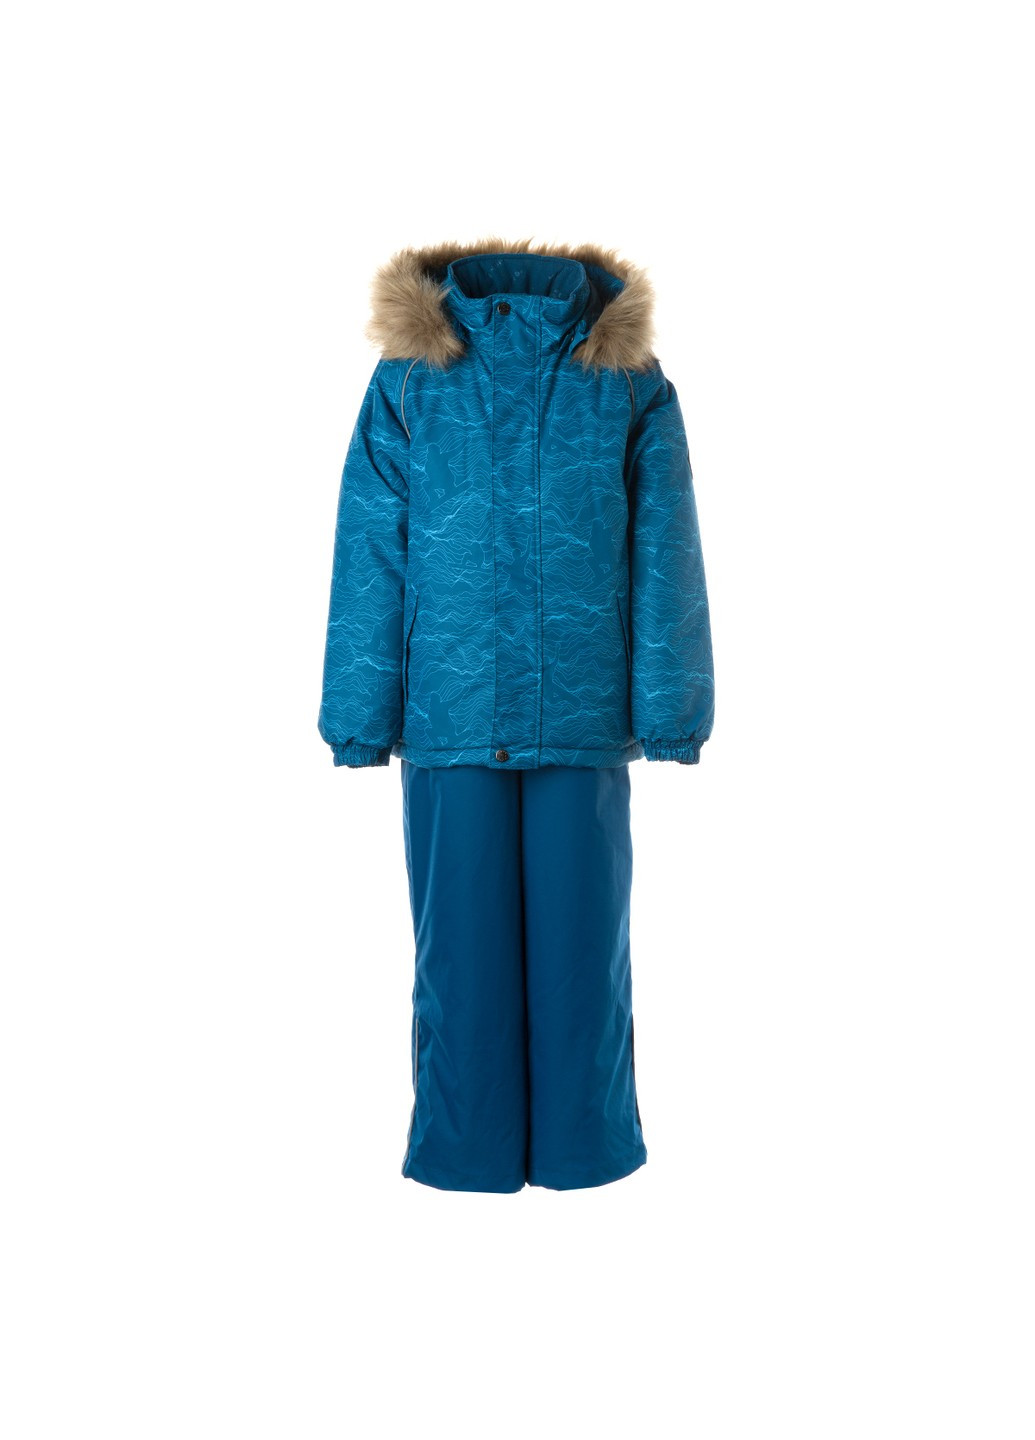 Бірюзовий зимній комплект зимовий (куртка + напівкомбінезон) winter Huppa